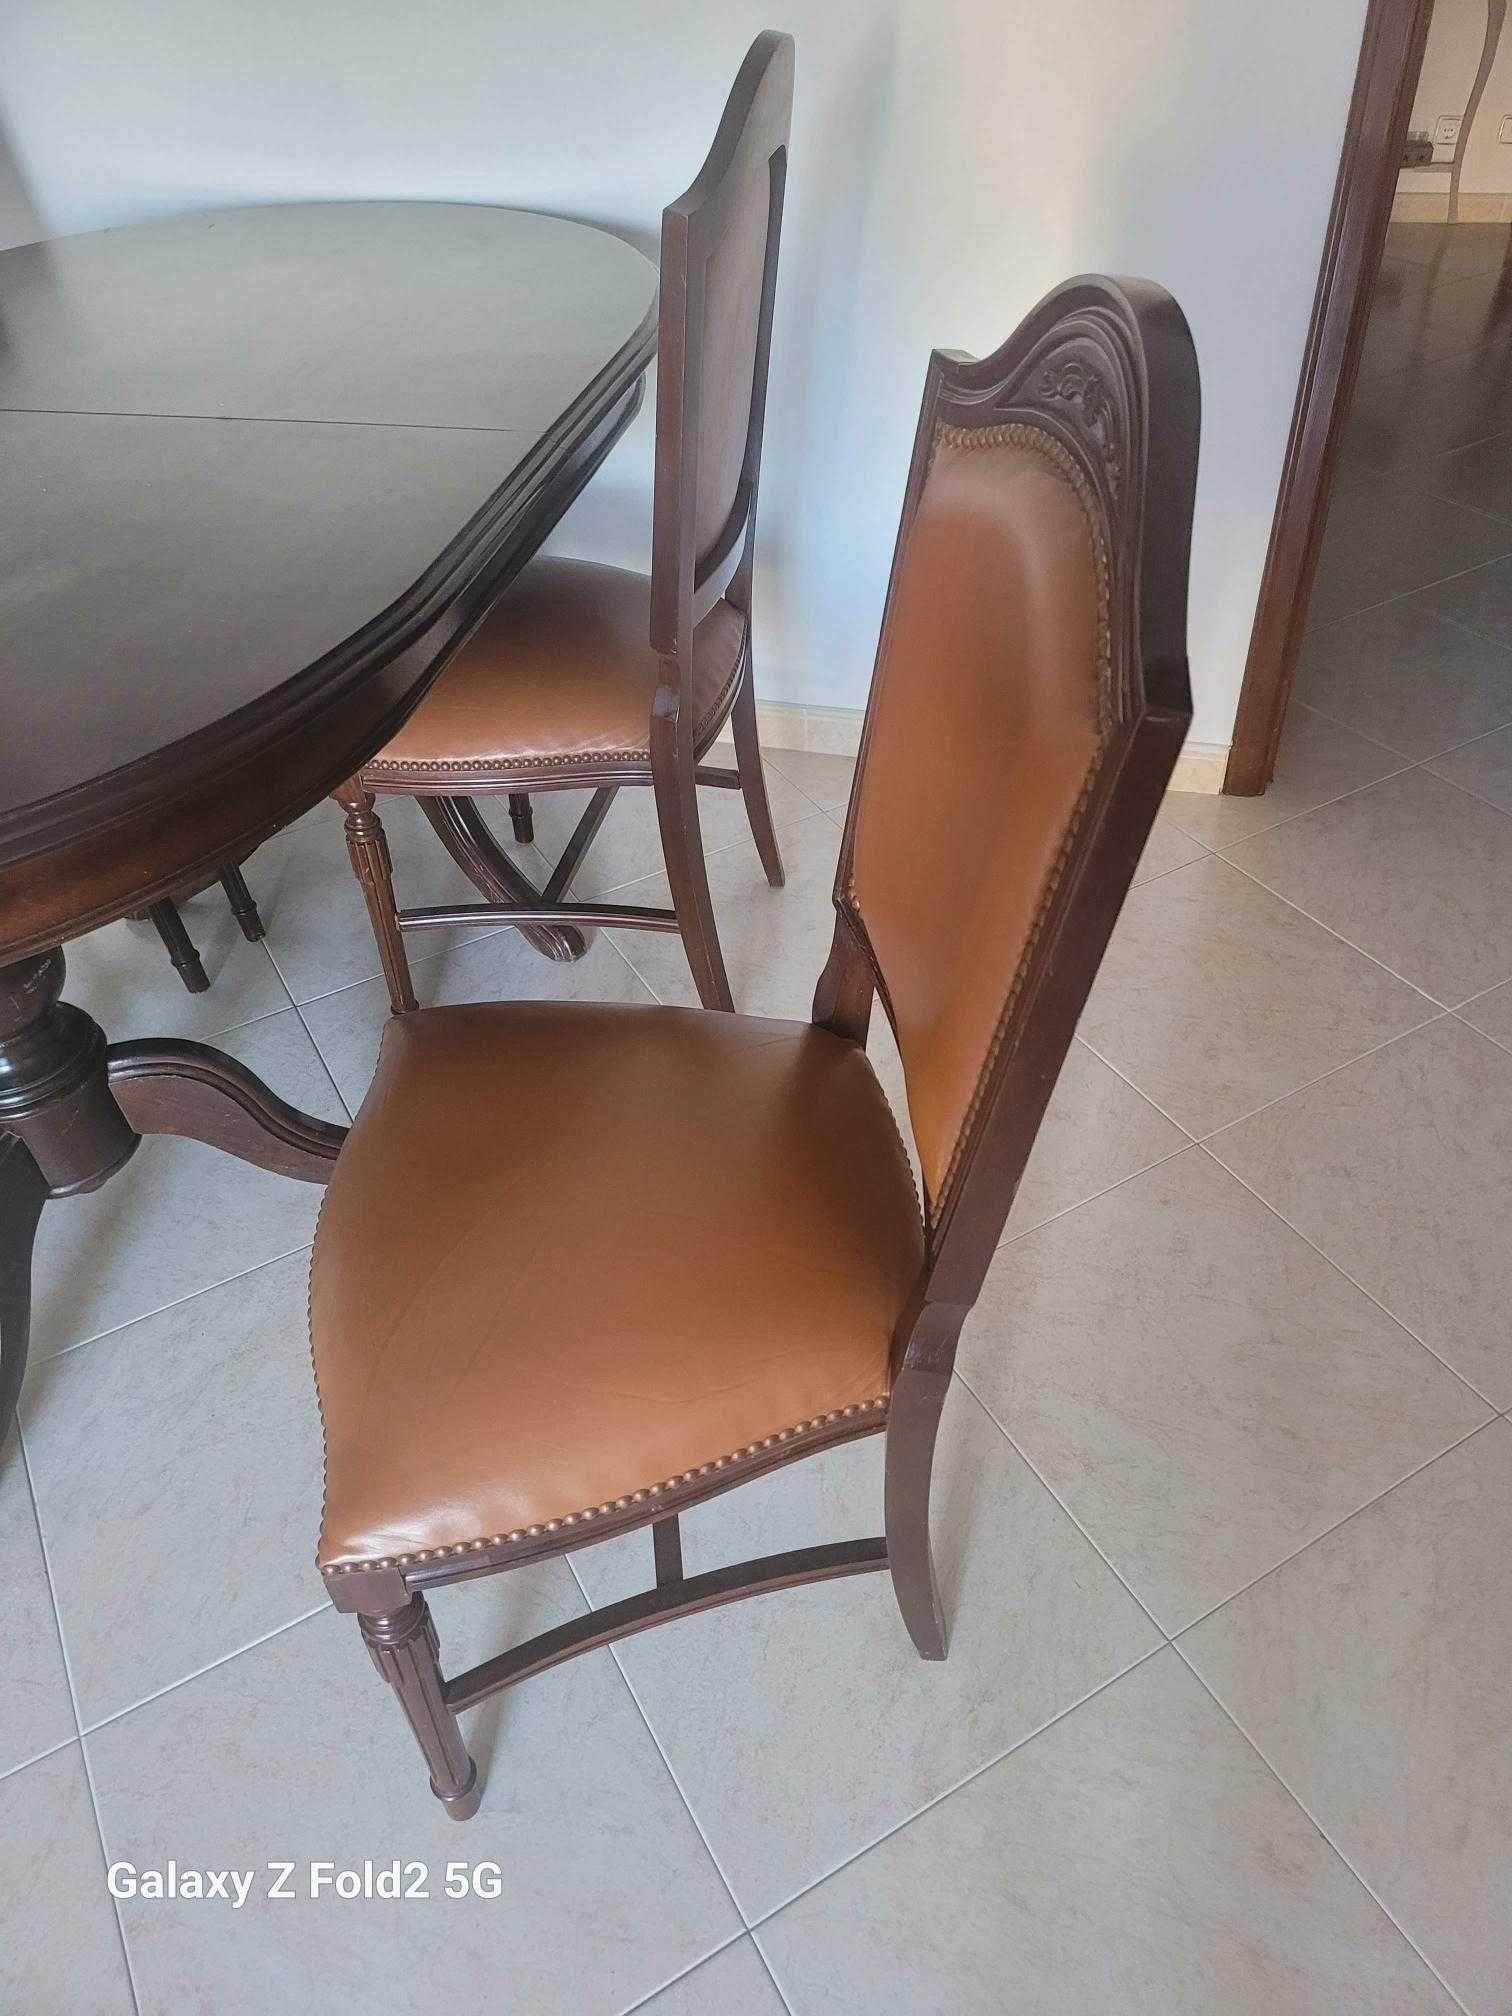 Mesa + 6 Cadeiras